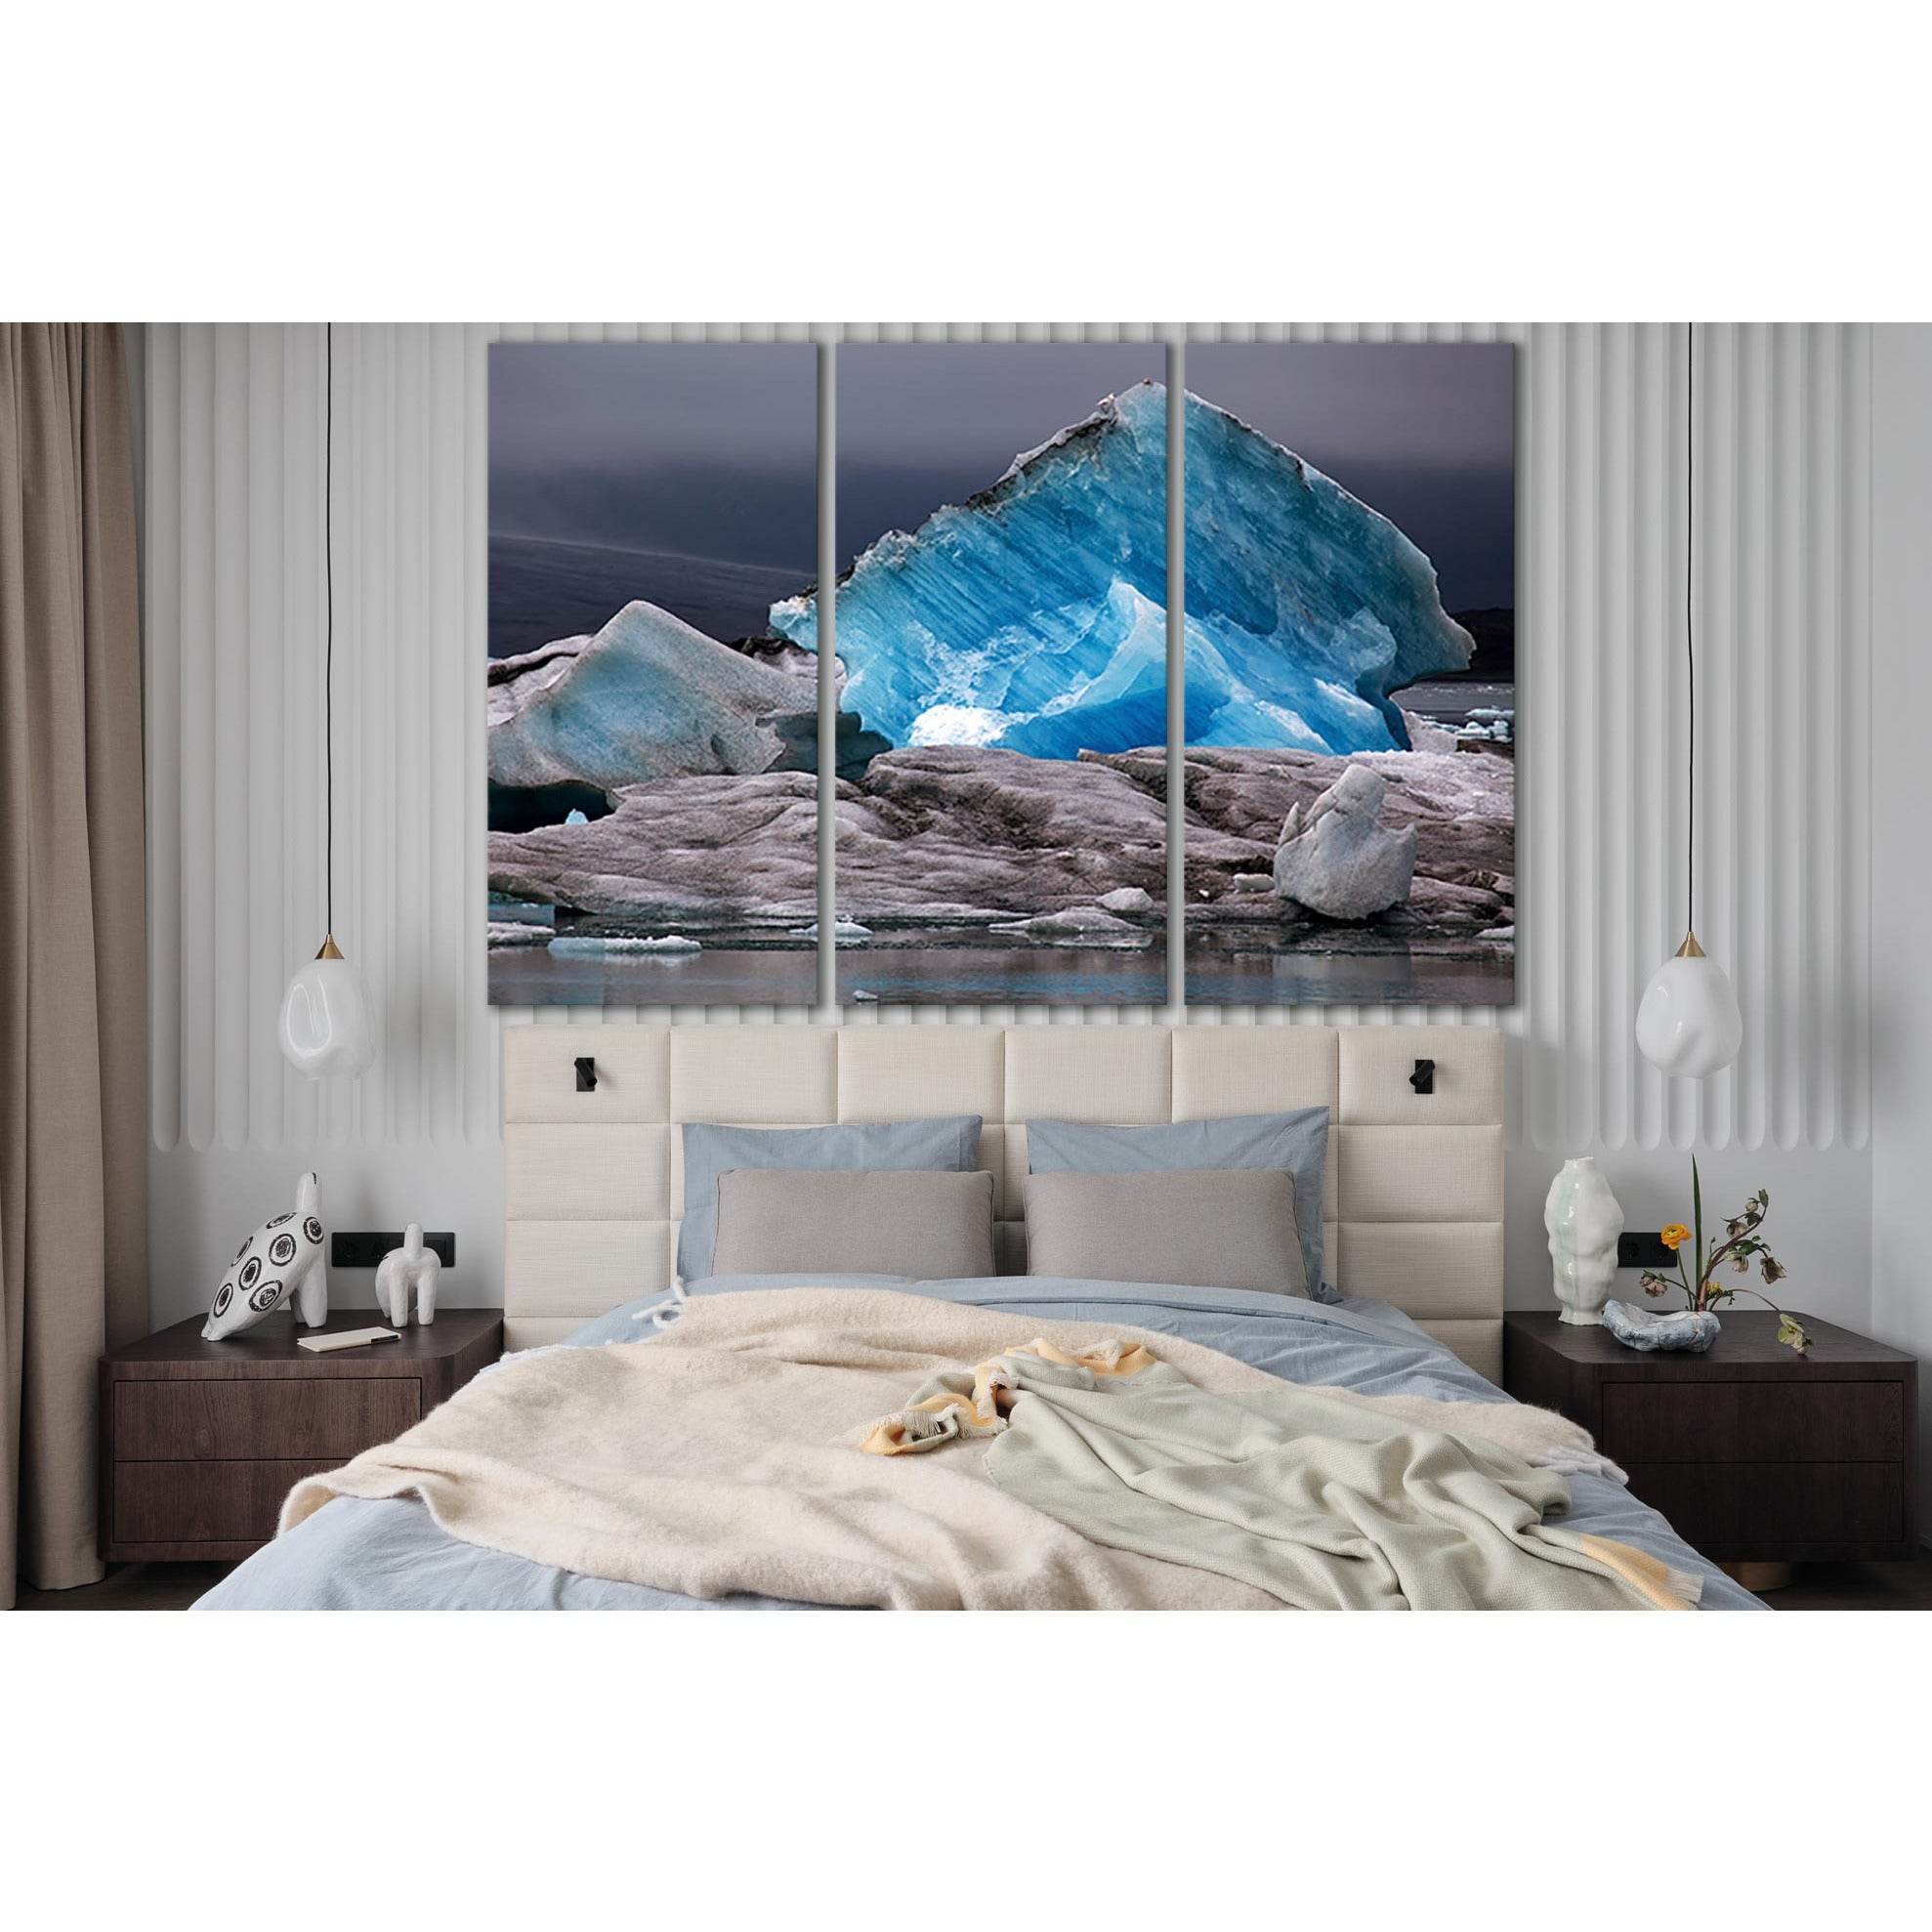 Lake Of The Vatnajökull Glacier №SL1351 Ready to Hang Canvas Print